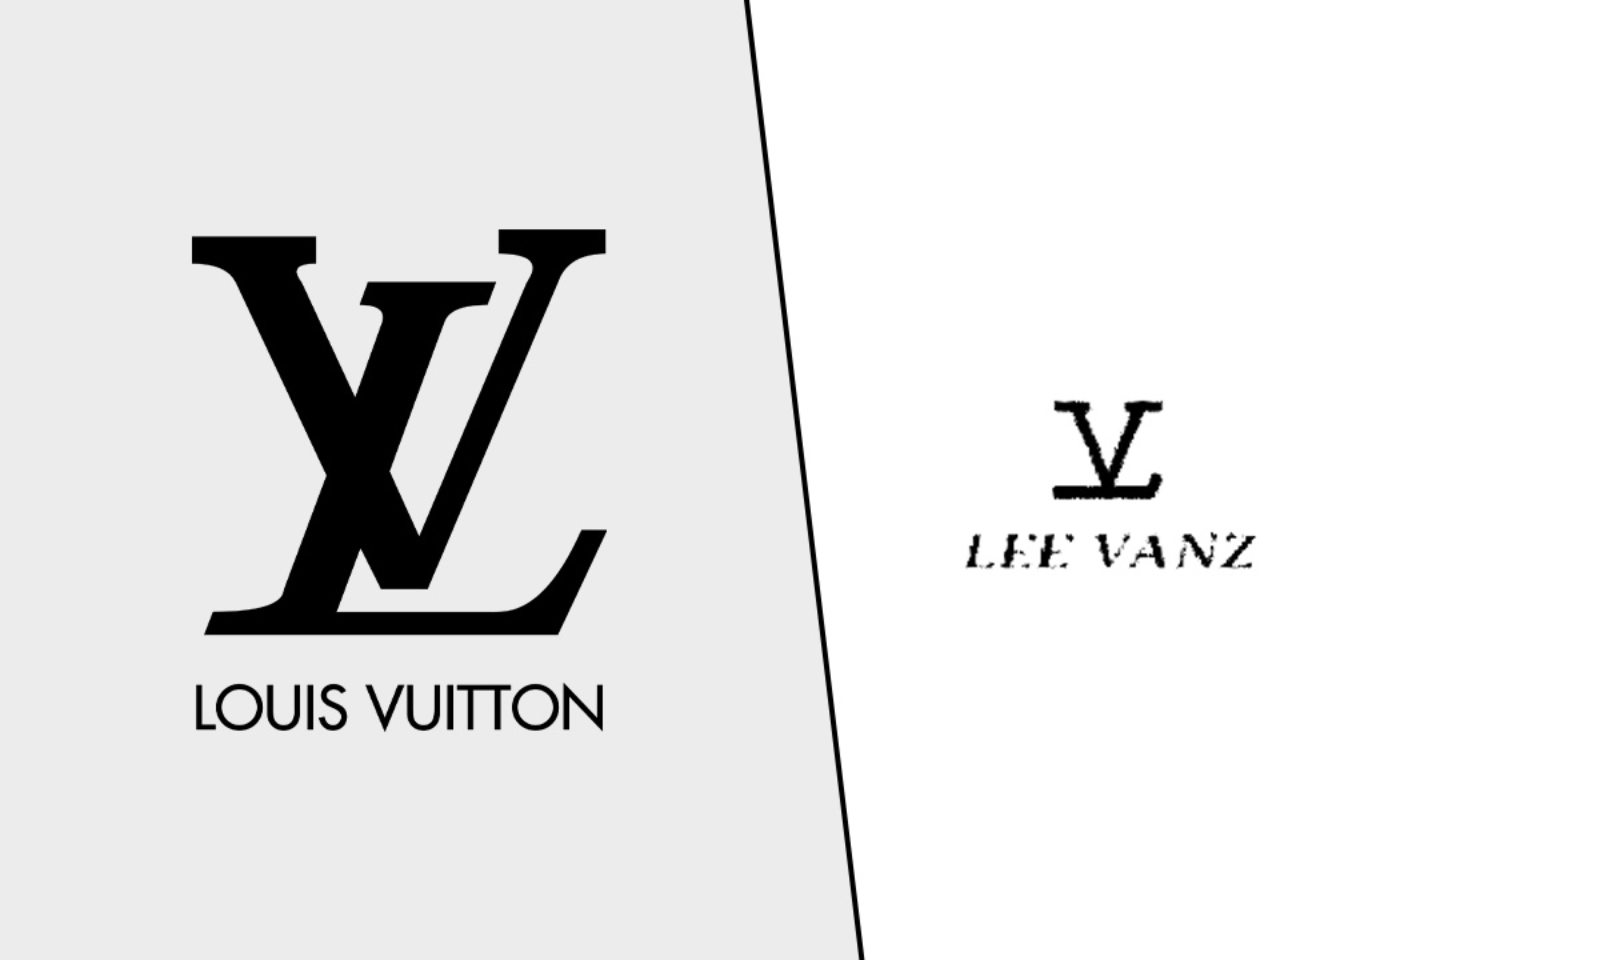 Louis Vuitton loses copyright infringement battle, Le Canard